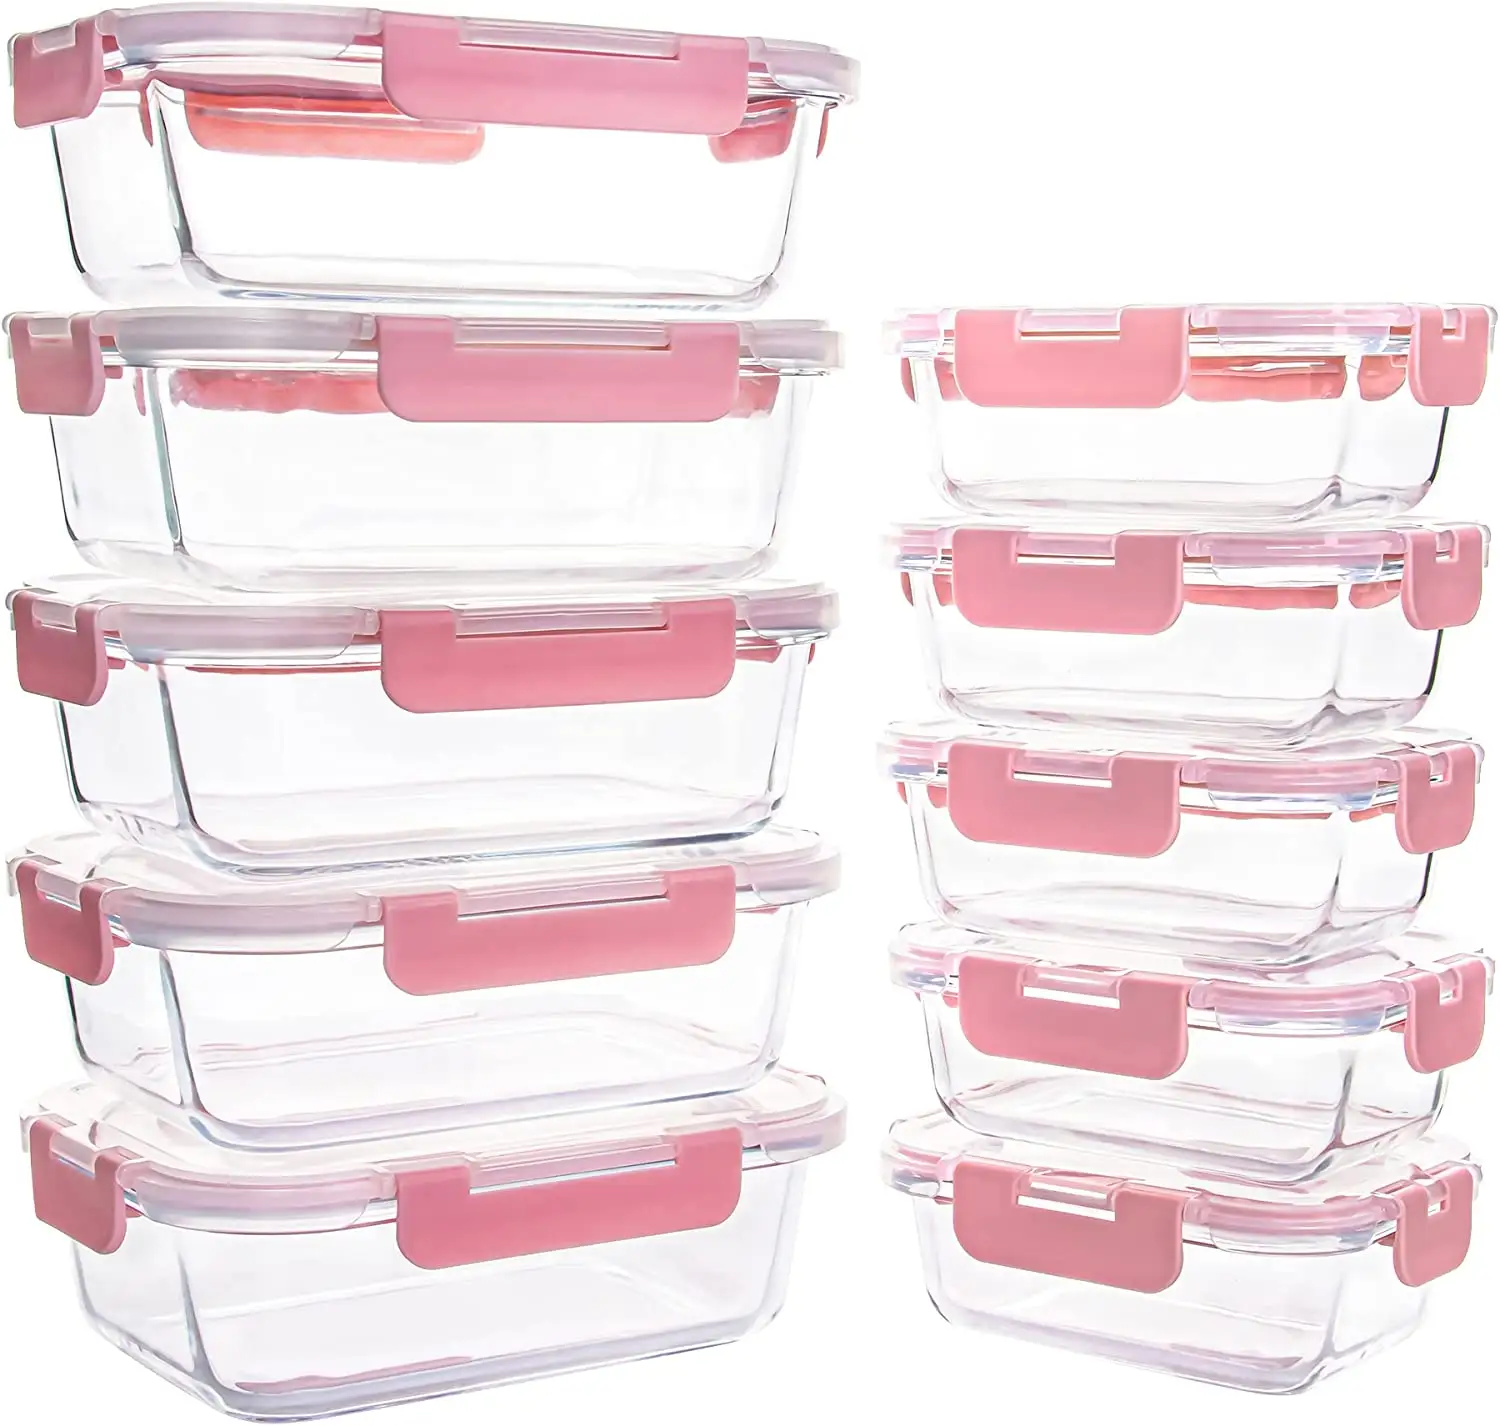 NISEVEN Glas-Lebensmittelbehälter tragbare luftdichte Glas-Lebensmittelvorbereitungsbehälter mit Deckeln Mikrowelle und Gefrierschrank sichere Bento-Kiste